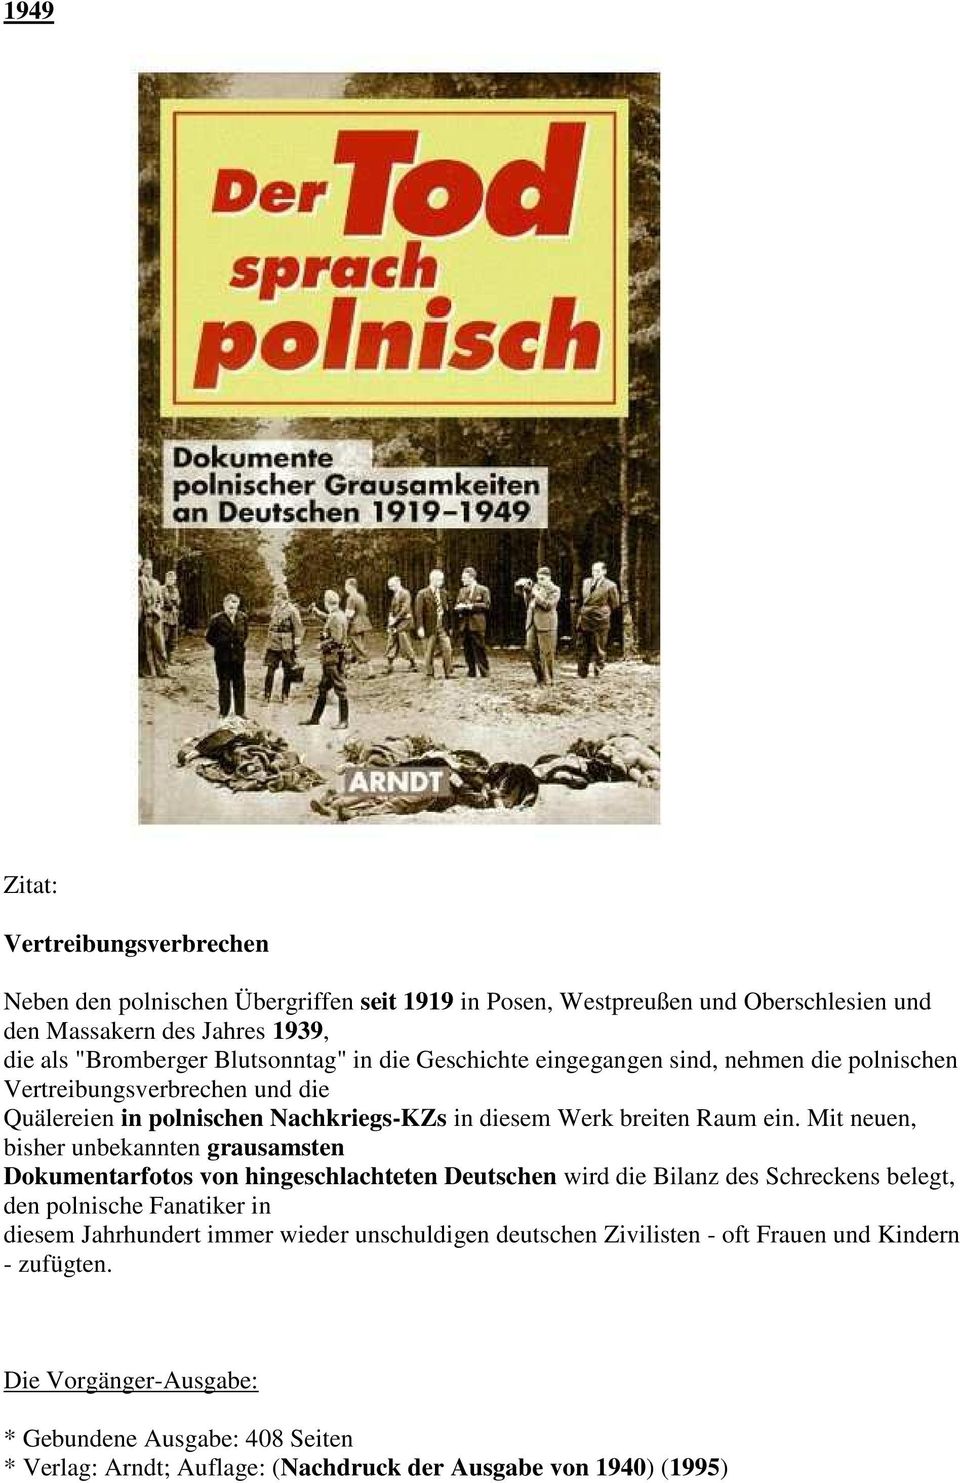 Mit neuen, bisher unbekannten grausamsten Dokumentarfotos von hingeschlachteten Deutschen wird die Bilanz des Schreckens belegt, den polnische Fanatiker in diesem Jahrhundert immer